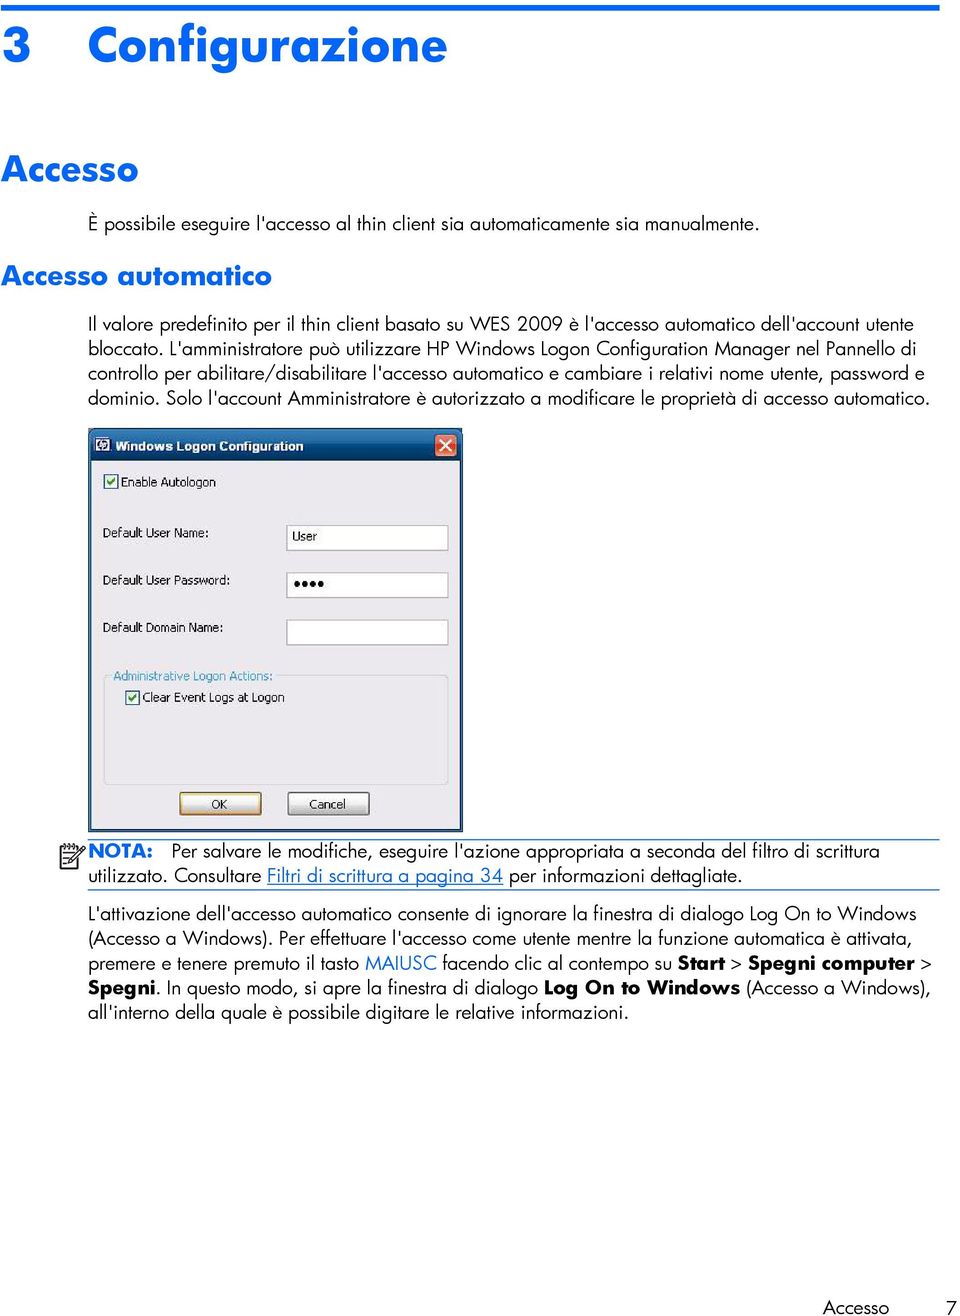 L'amministratore può utilizzare HP Windows Logon Configuration Manager nel Pannello di controllo per abilitare/disabilitare l'accesso automatico e cambiare i relativi nome utente, password e dominio.